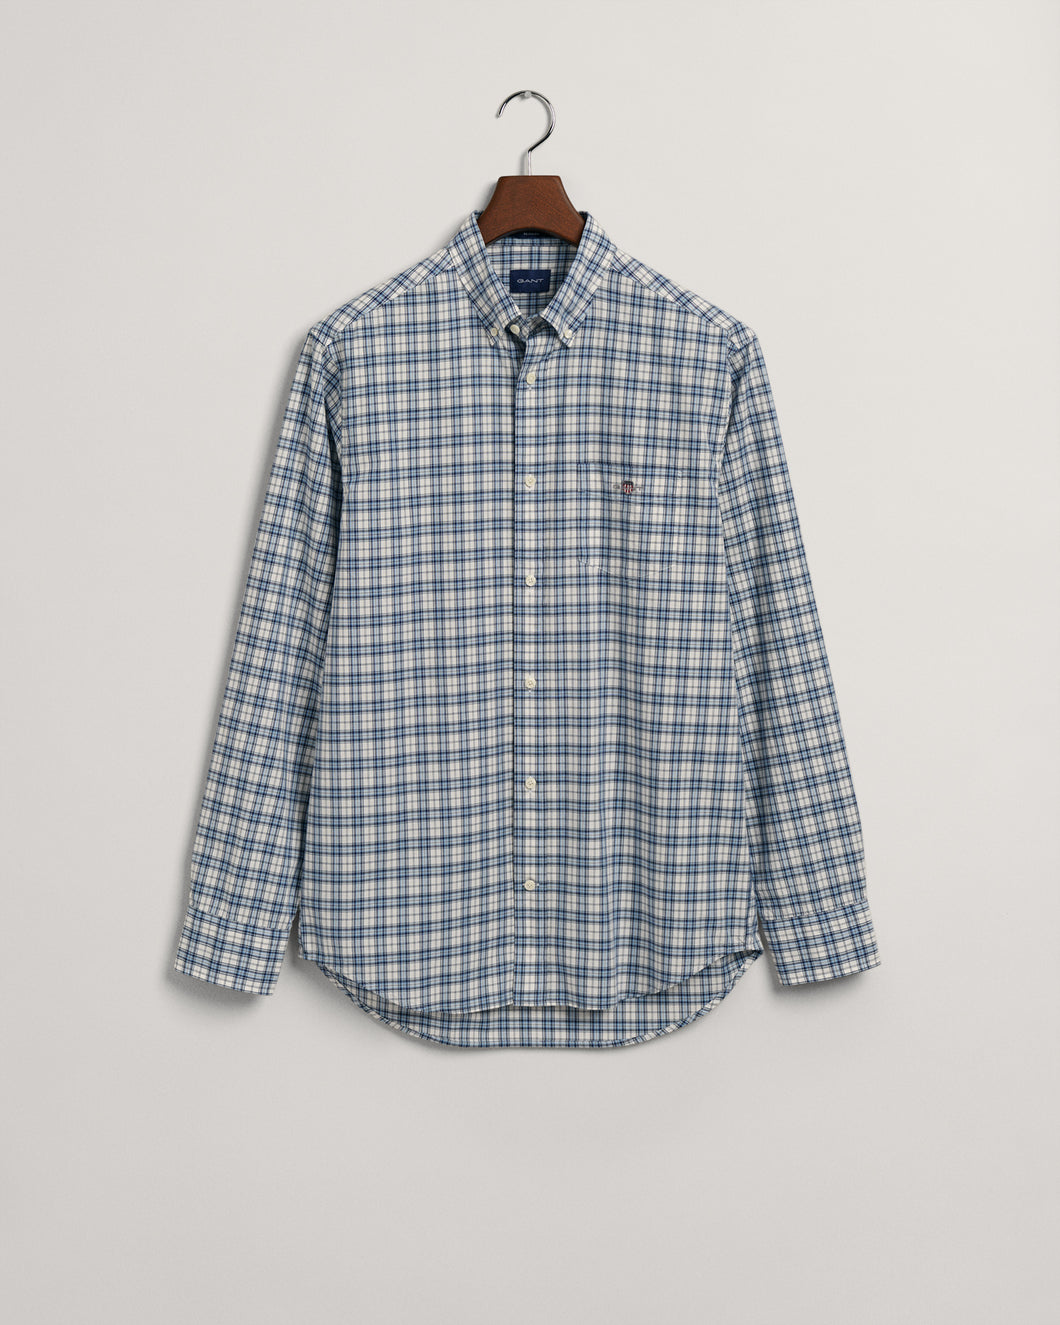 GANT Micro Check Shirt in Light Blue  3230061 Shirt